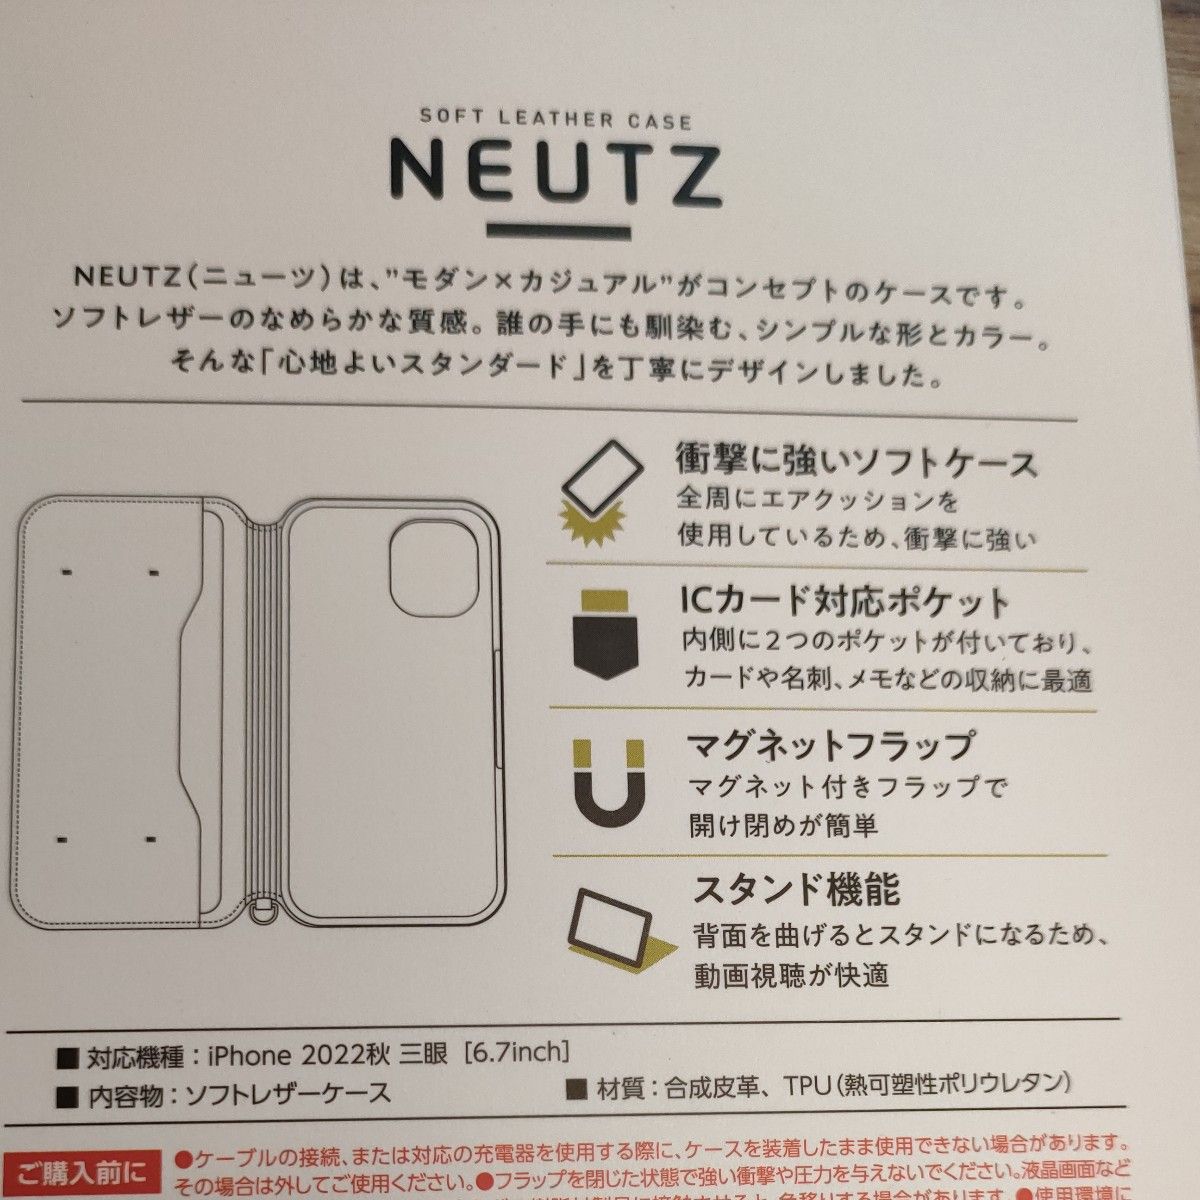  iPhone 14 Pro Max ケースカバー レザー 手帳型 マグネット耐衝撃 衝撃吸収 スタンド機能付 NEUTZ